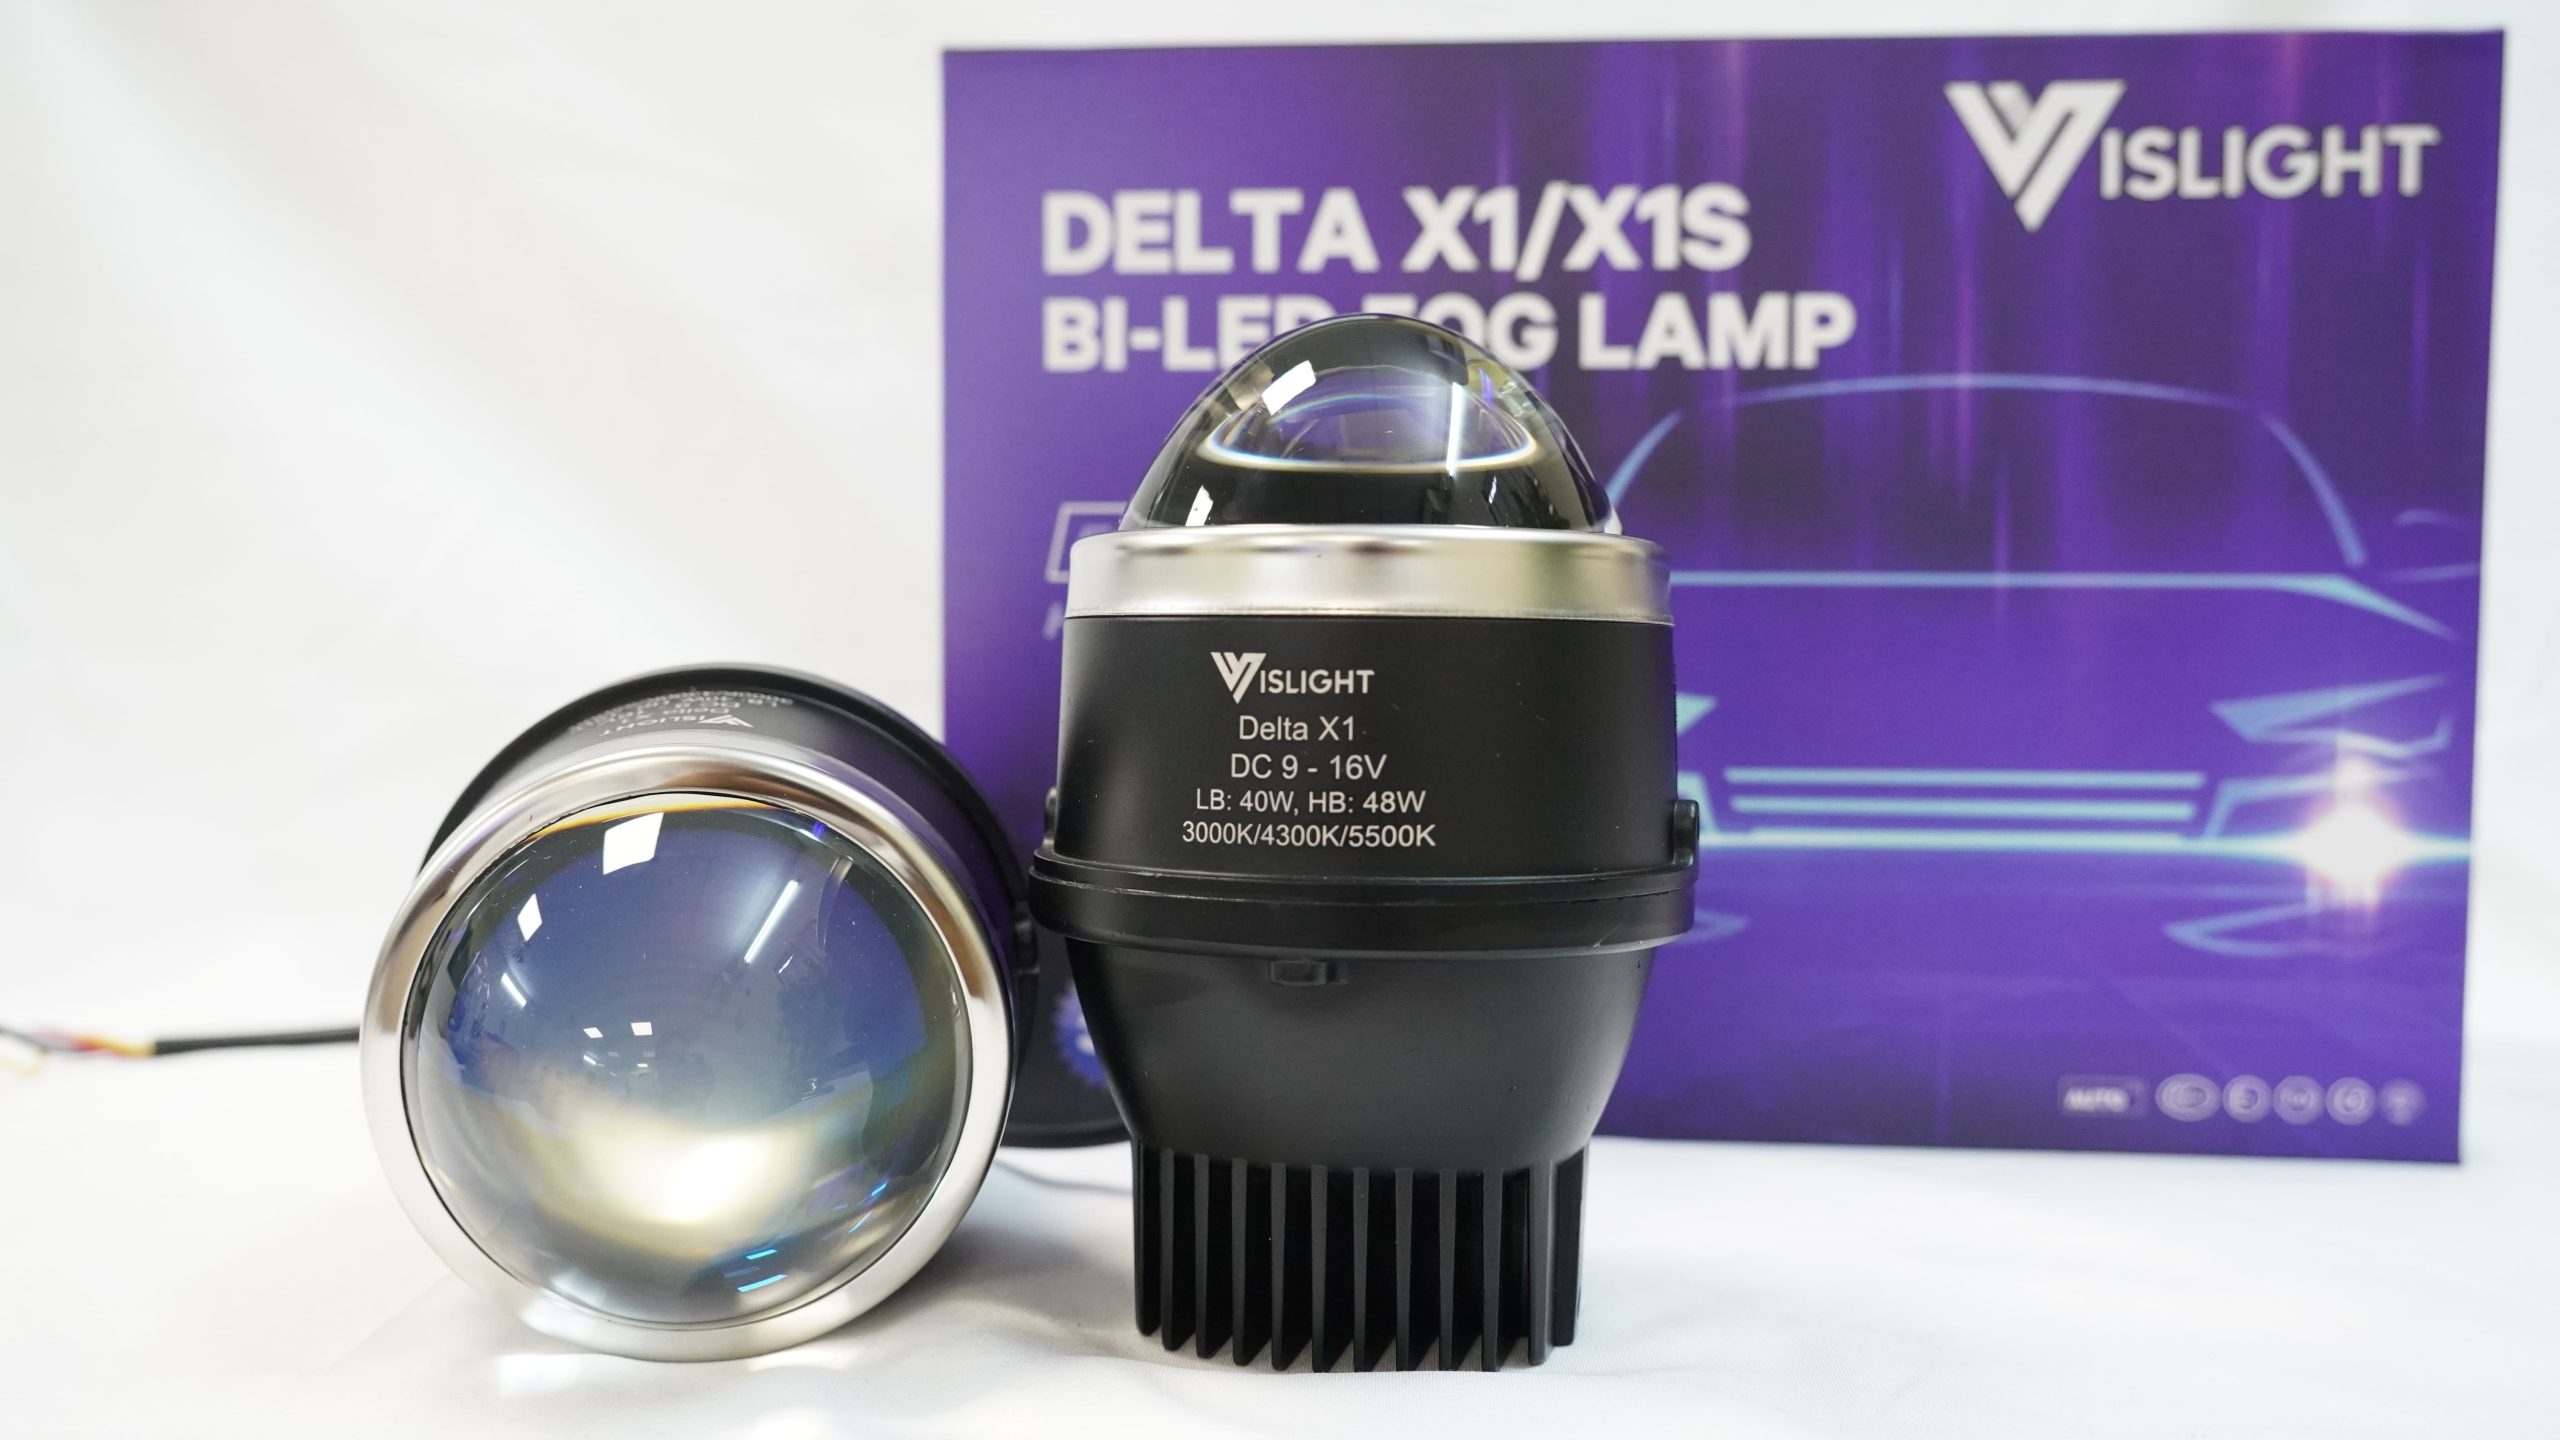 Vislight Delta X1